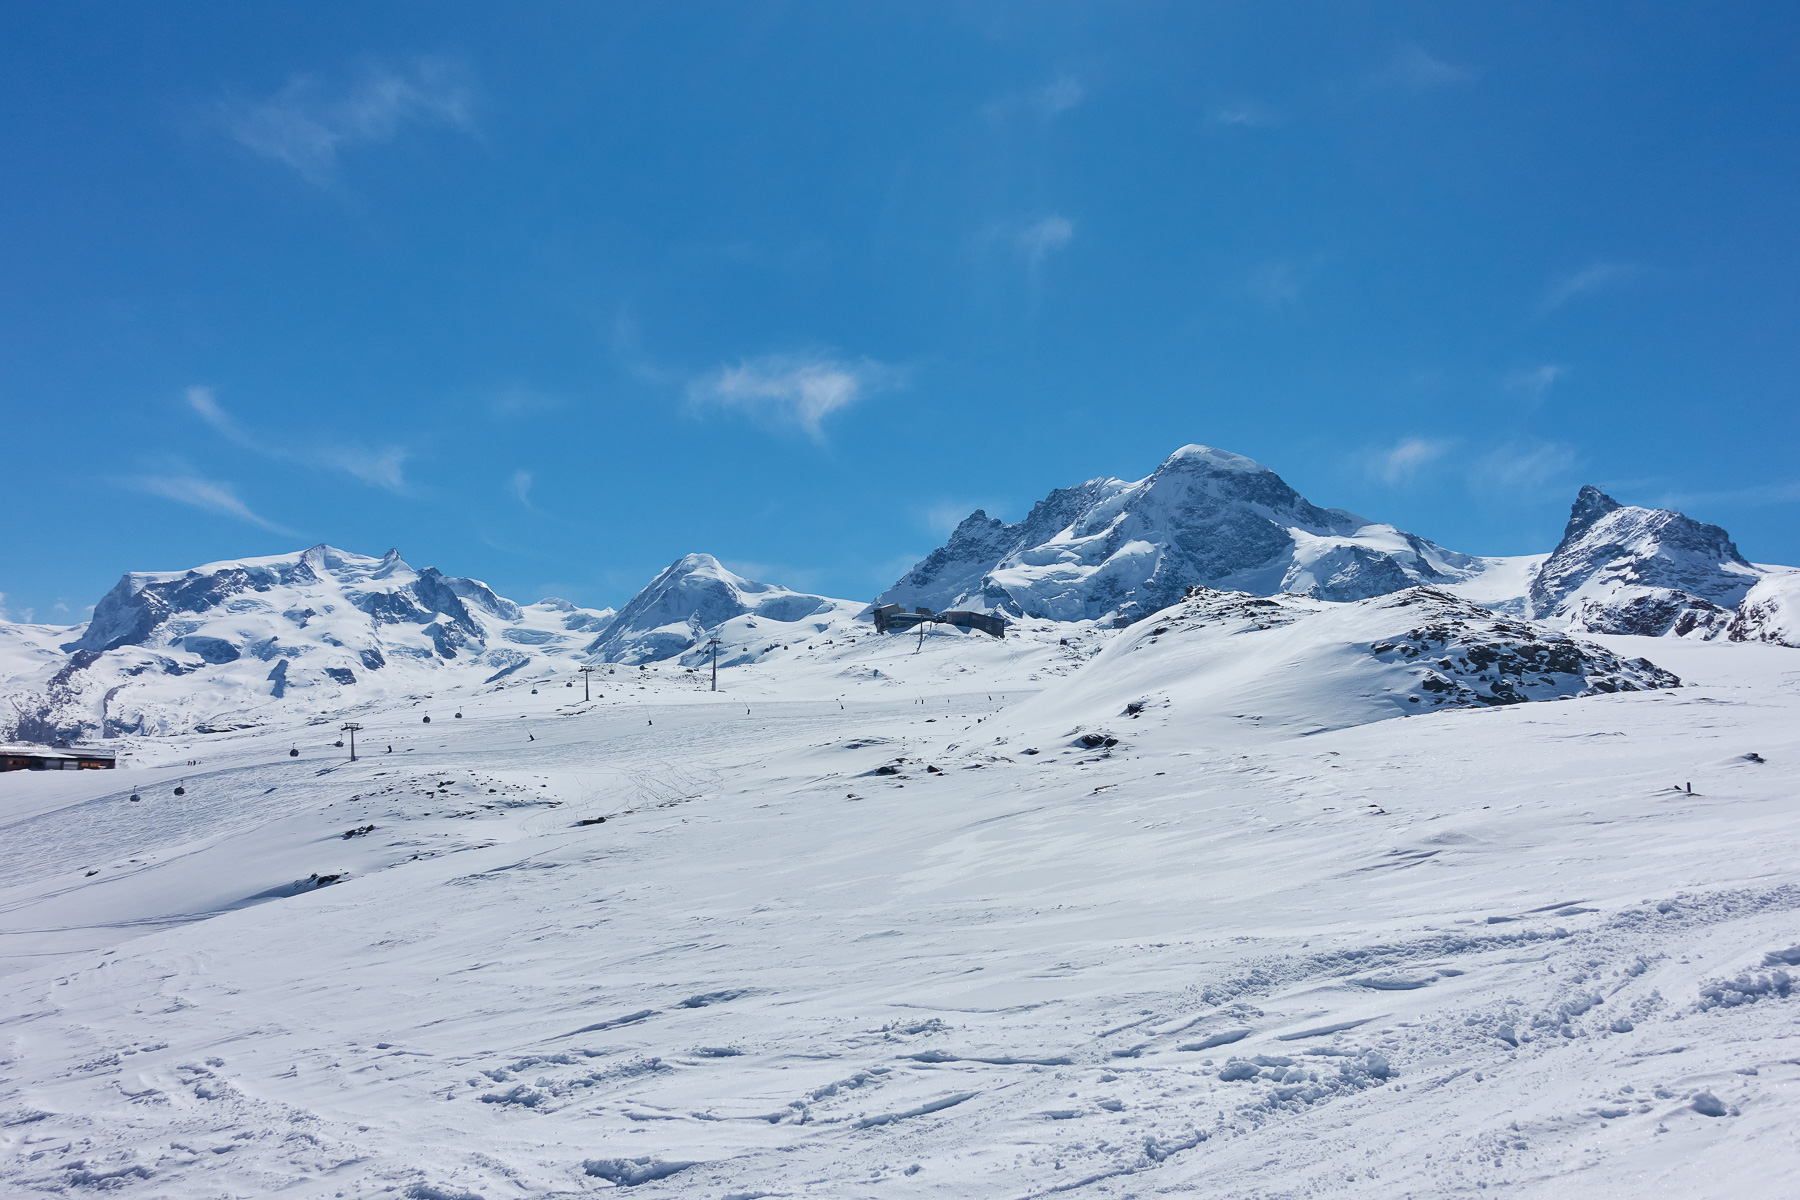 Monte Rosa, Liskamm, Breithorn und Klein Matterhorn